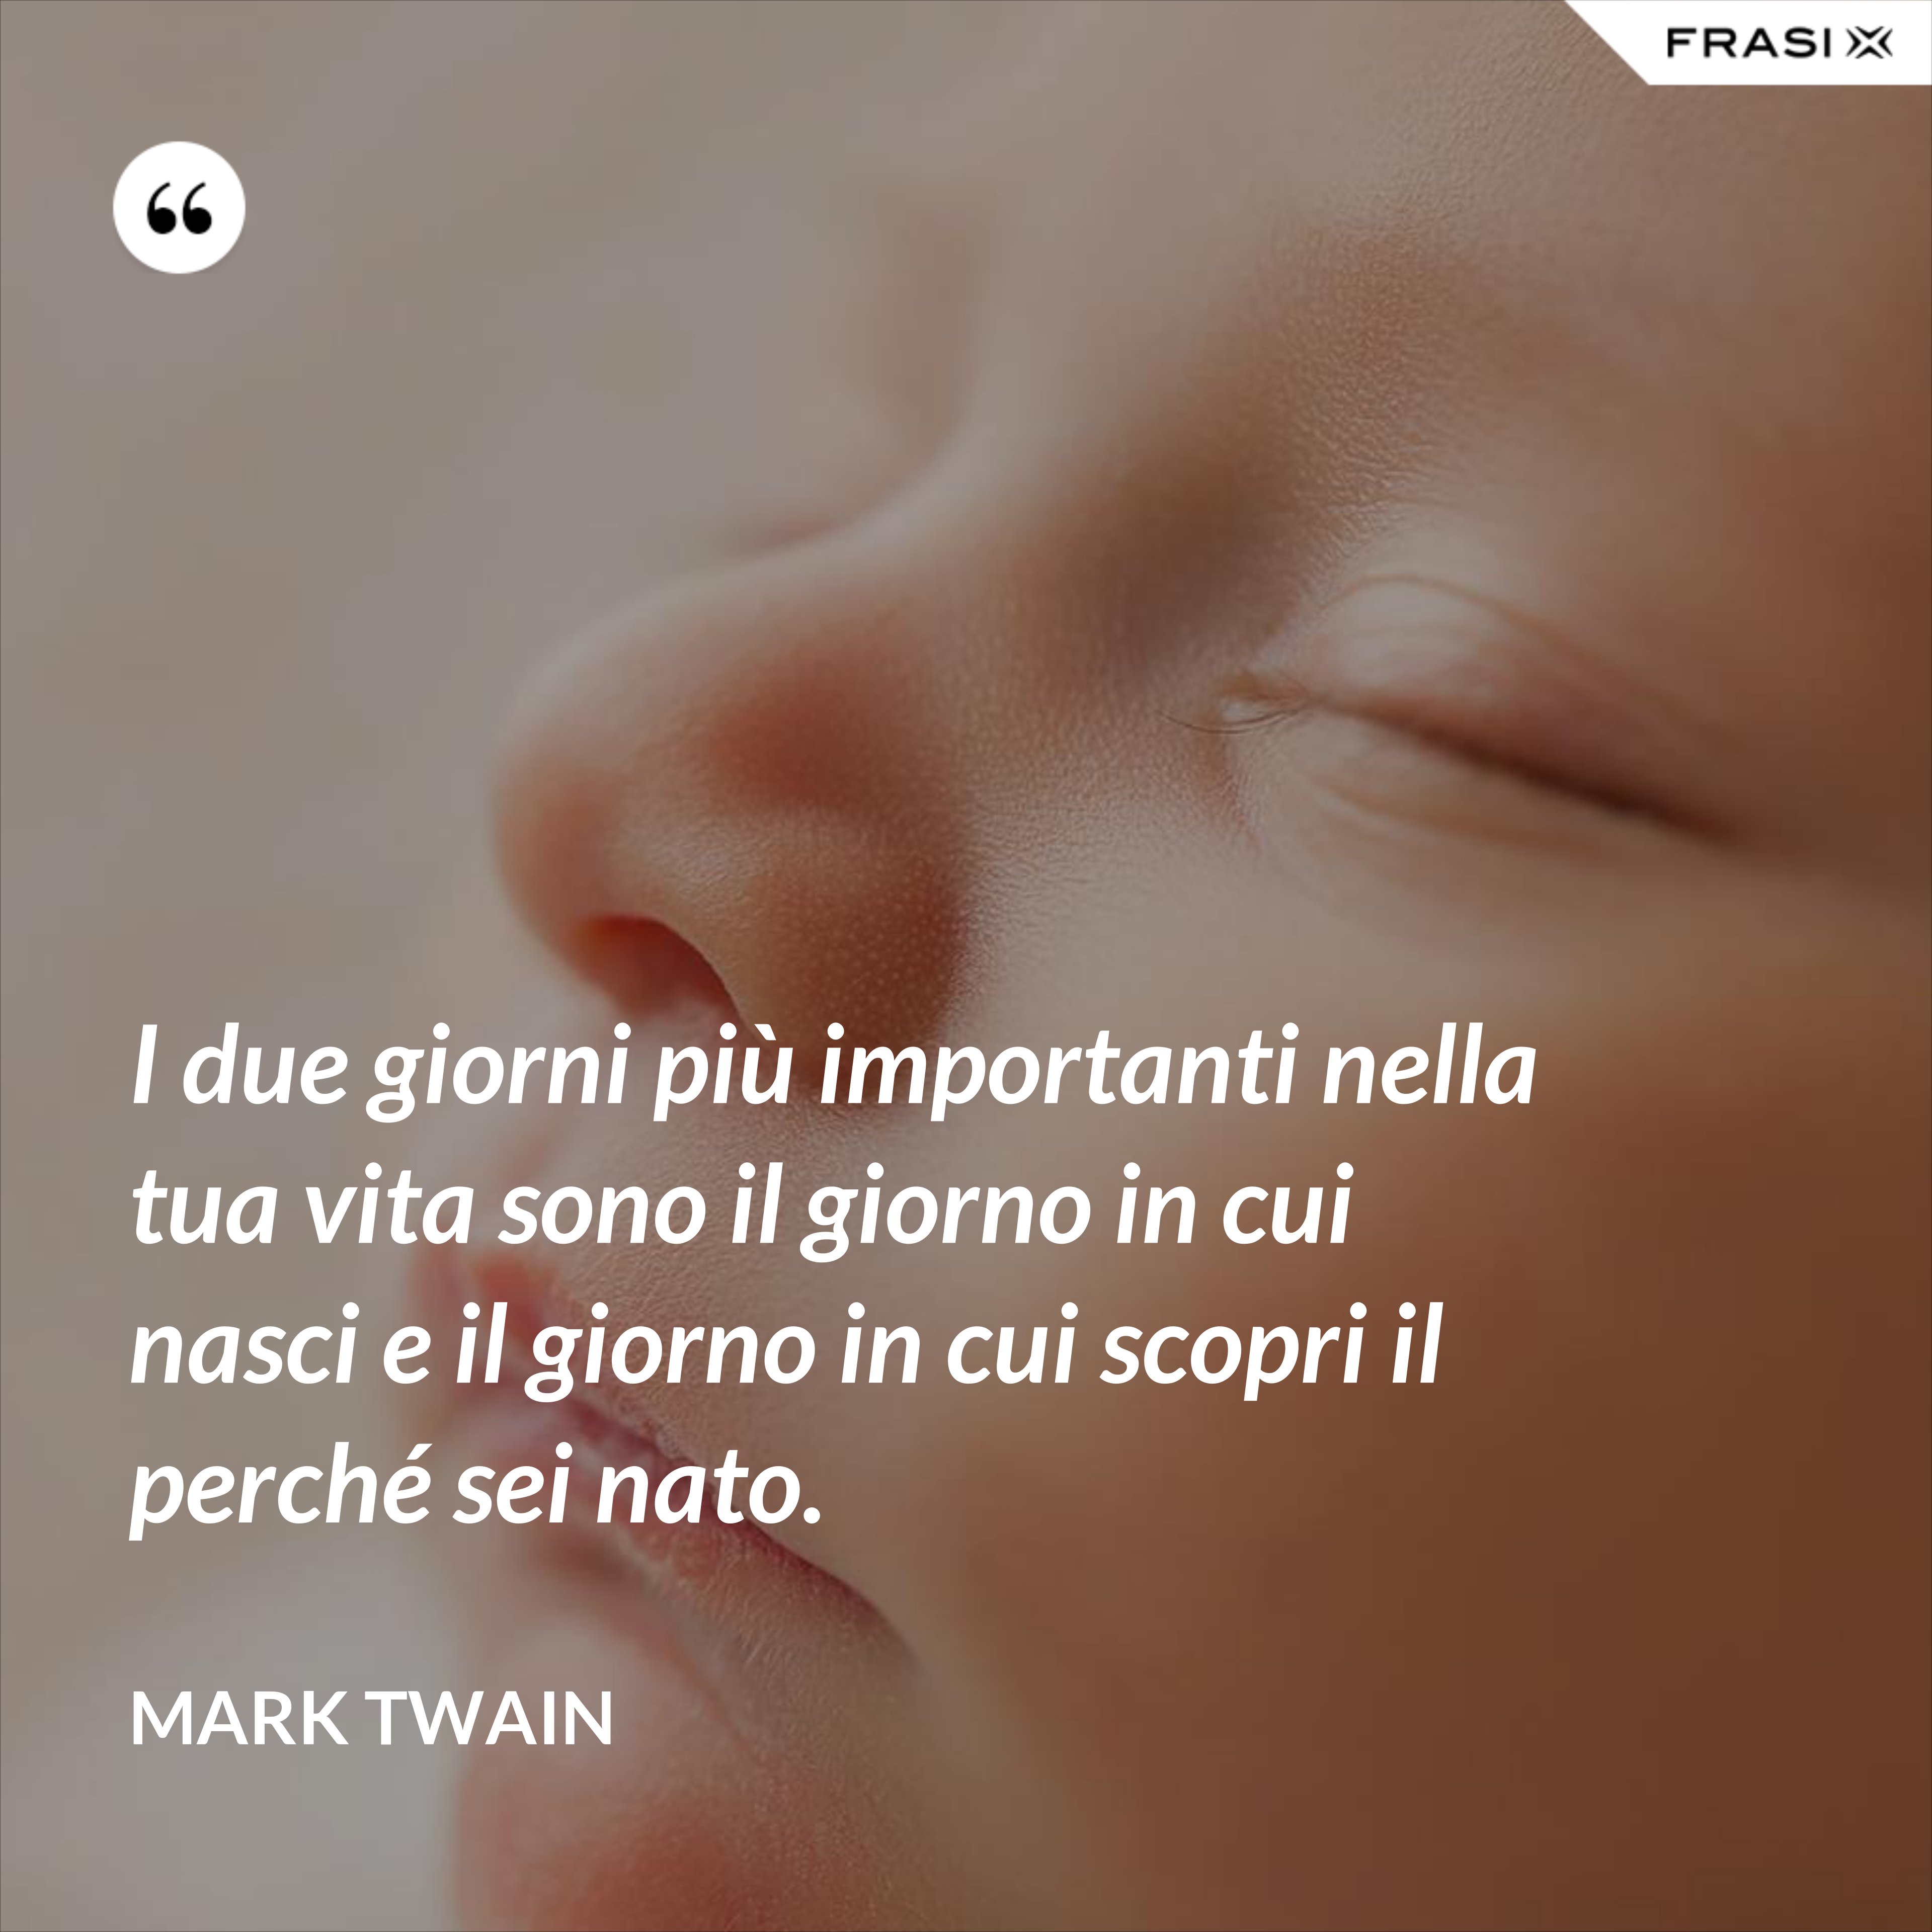 I due giorni più importanti nella tua vita sono il giorno in cui nasci e il giorno in cui scopri il perché sei nato. - Mark Twain